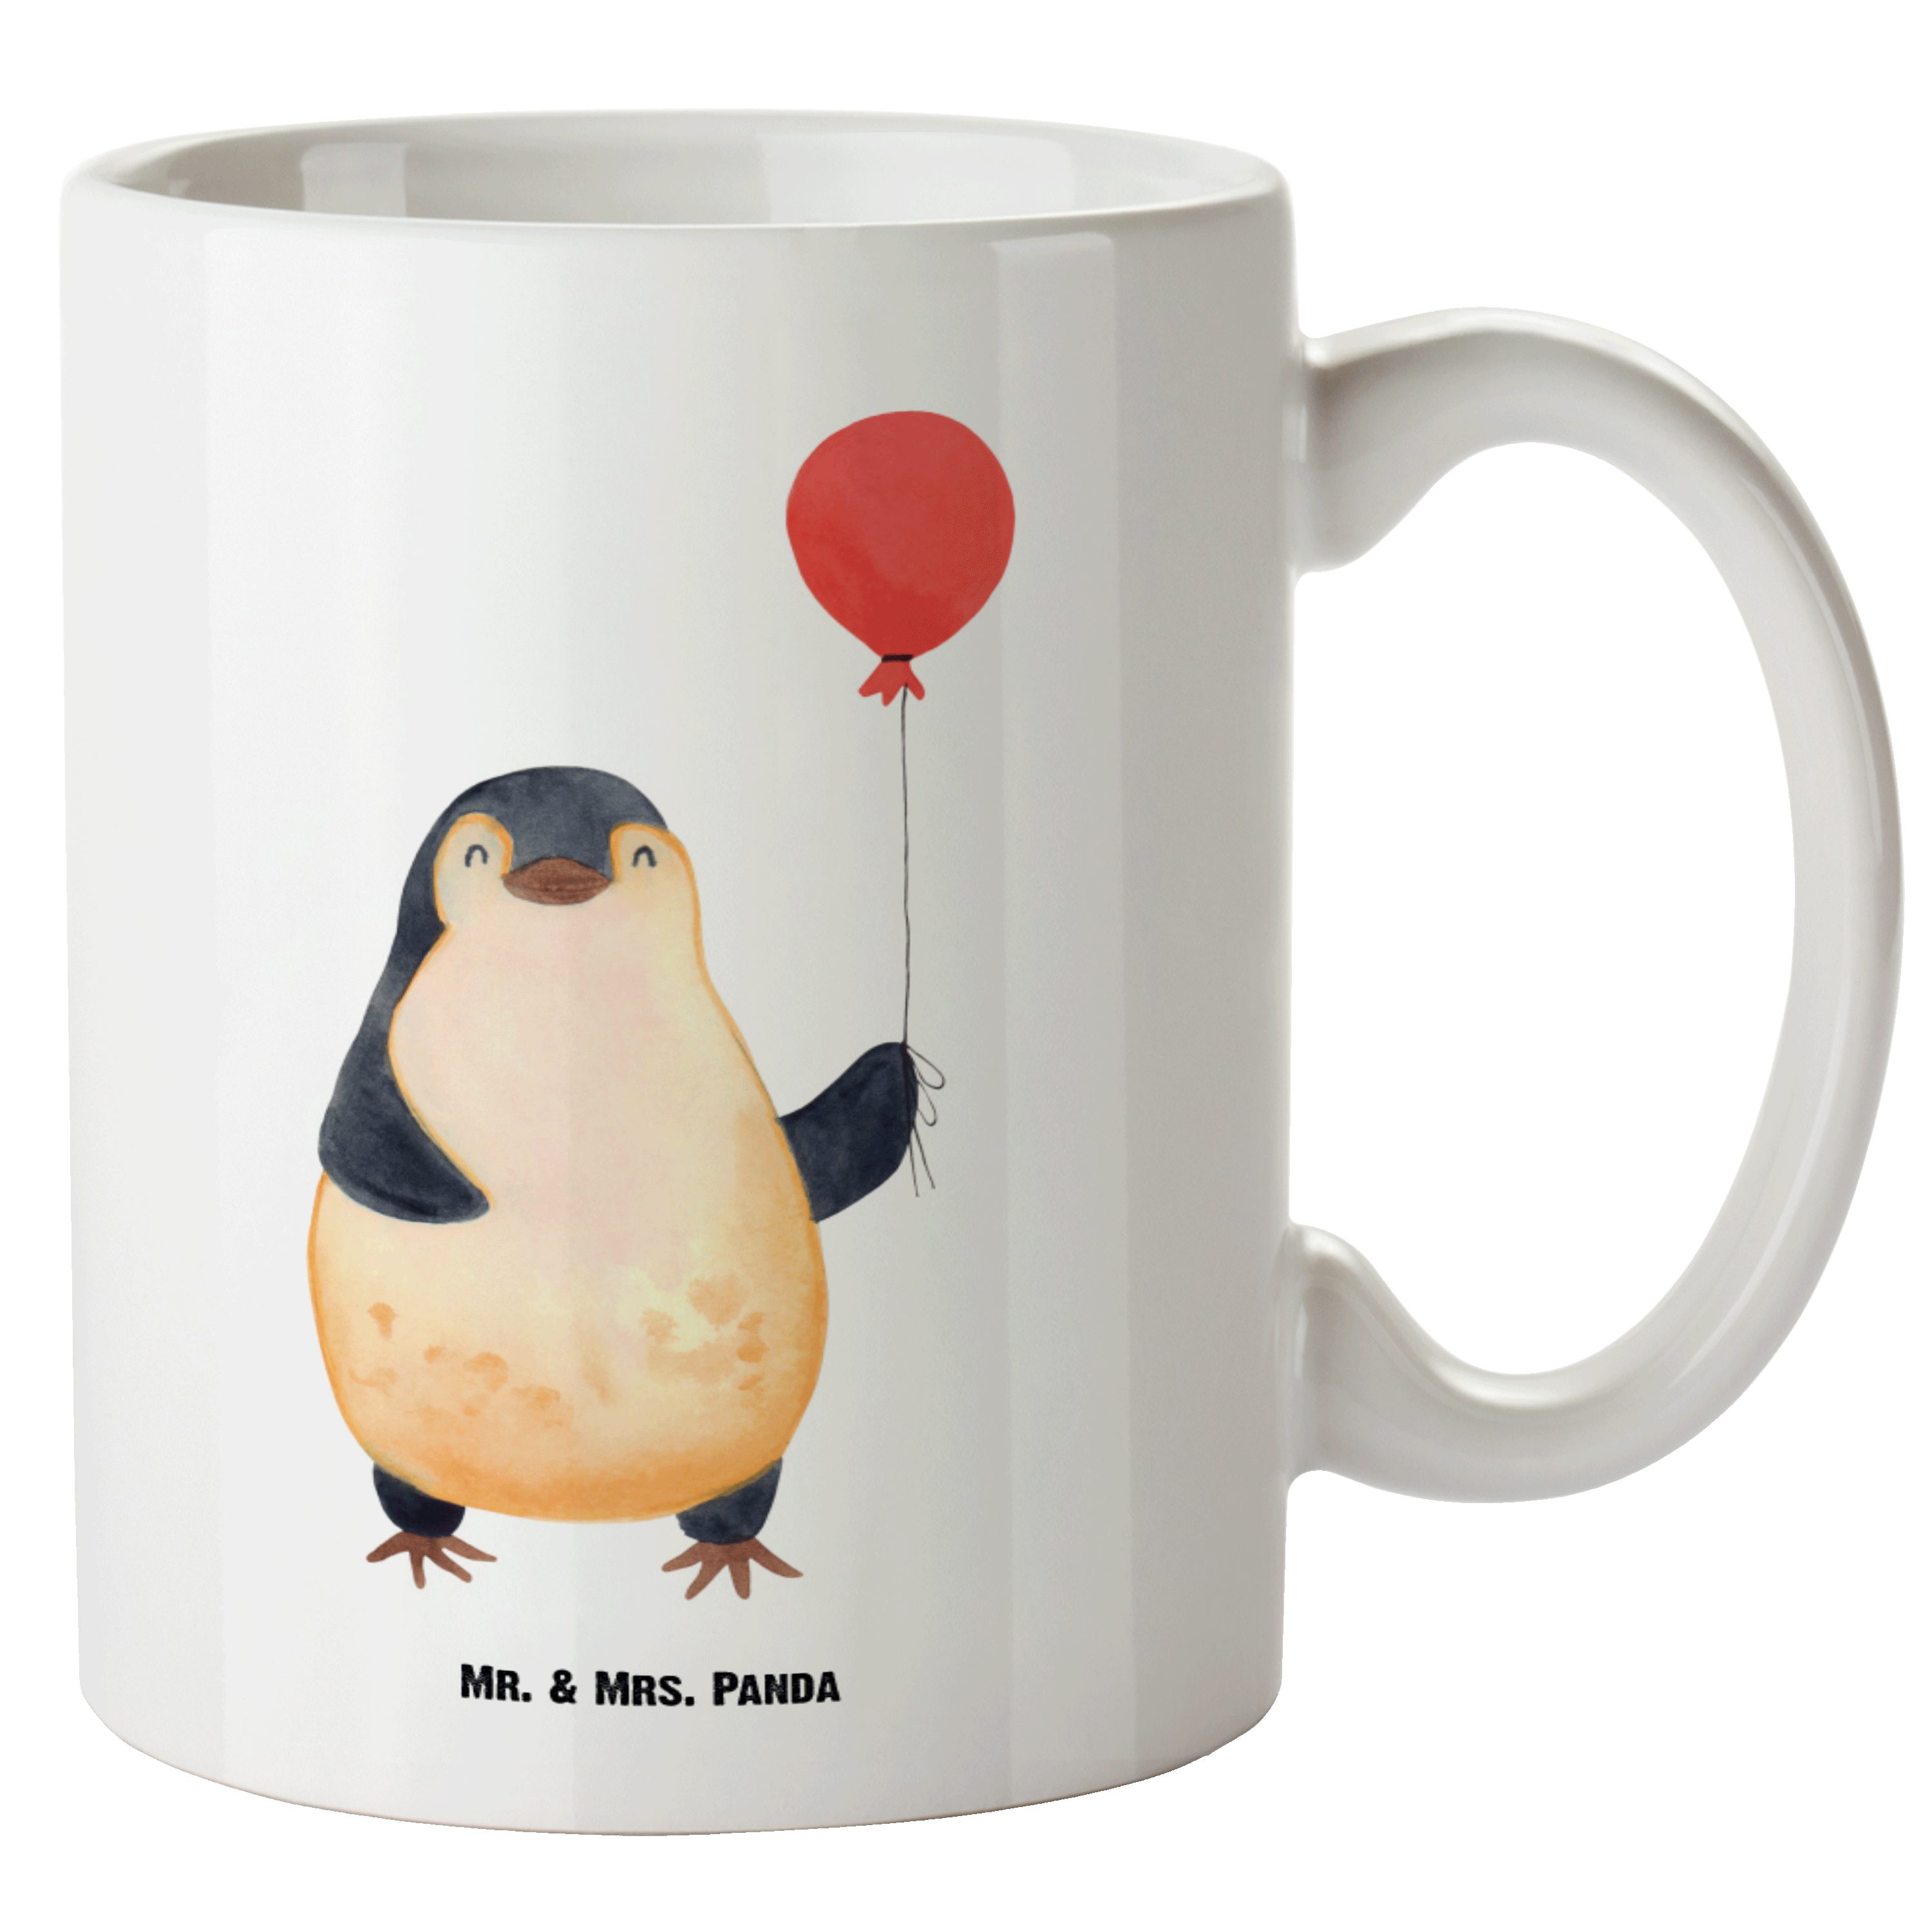 Mr. & Mrs. Panda Tasse Pinguin Luftballon - Weiß - Geschenk, Große Tasse, gute Laune, XL Bec, XL Tasse Keramik | Tassen